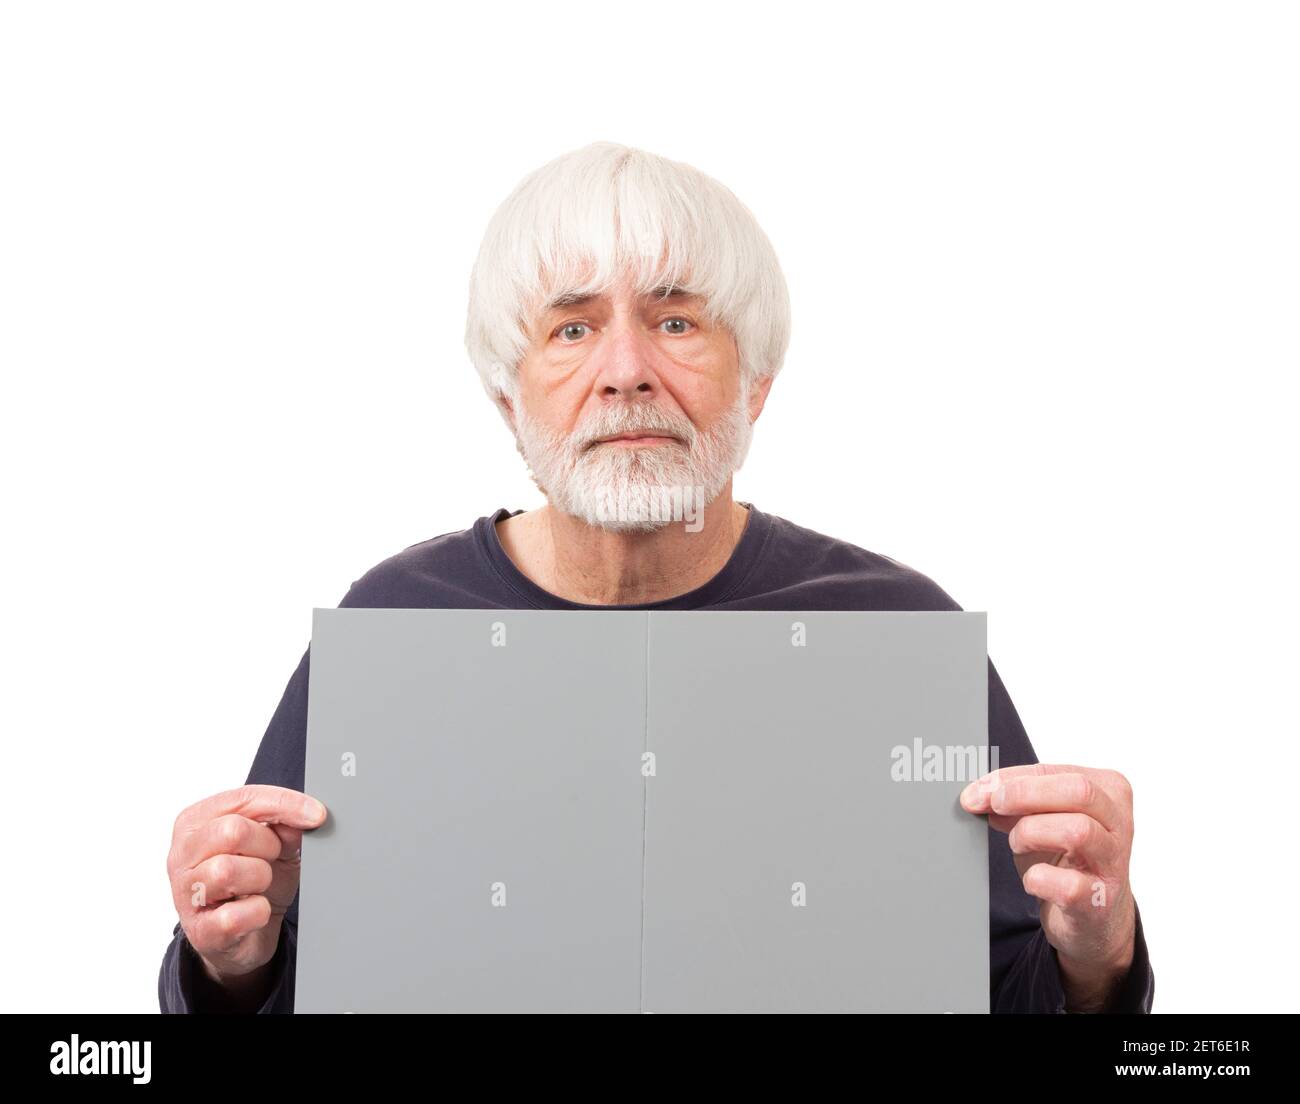 Horizontale Aufnahme eines alten Mannes mit langen Haaren, der eine 18 Prozent graue Karte vor seiner Brust hält. Weißer Hintergrund. Stockfoto